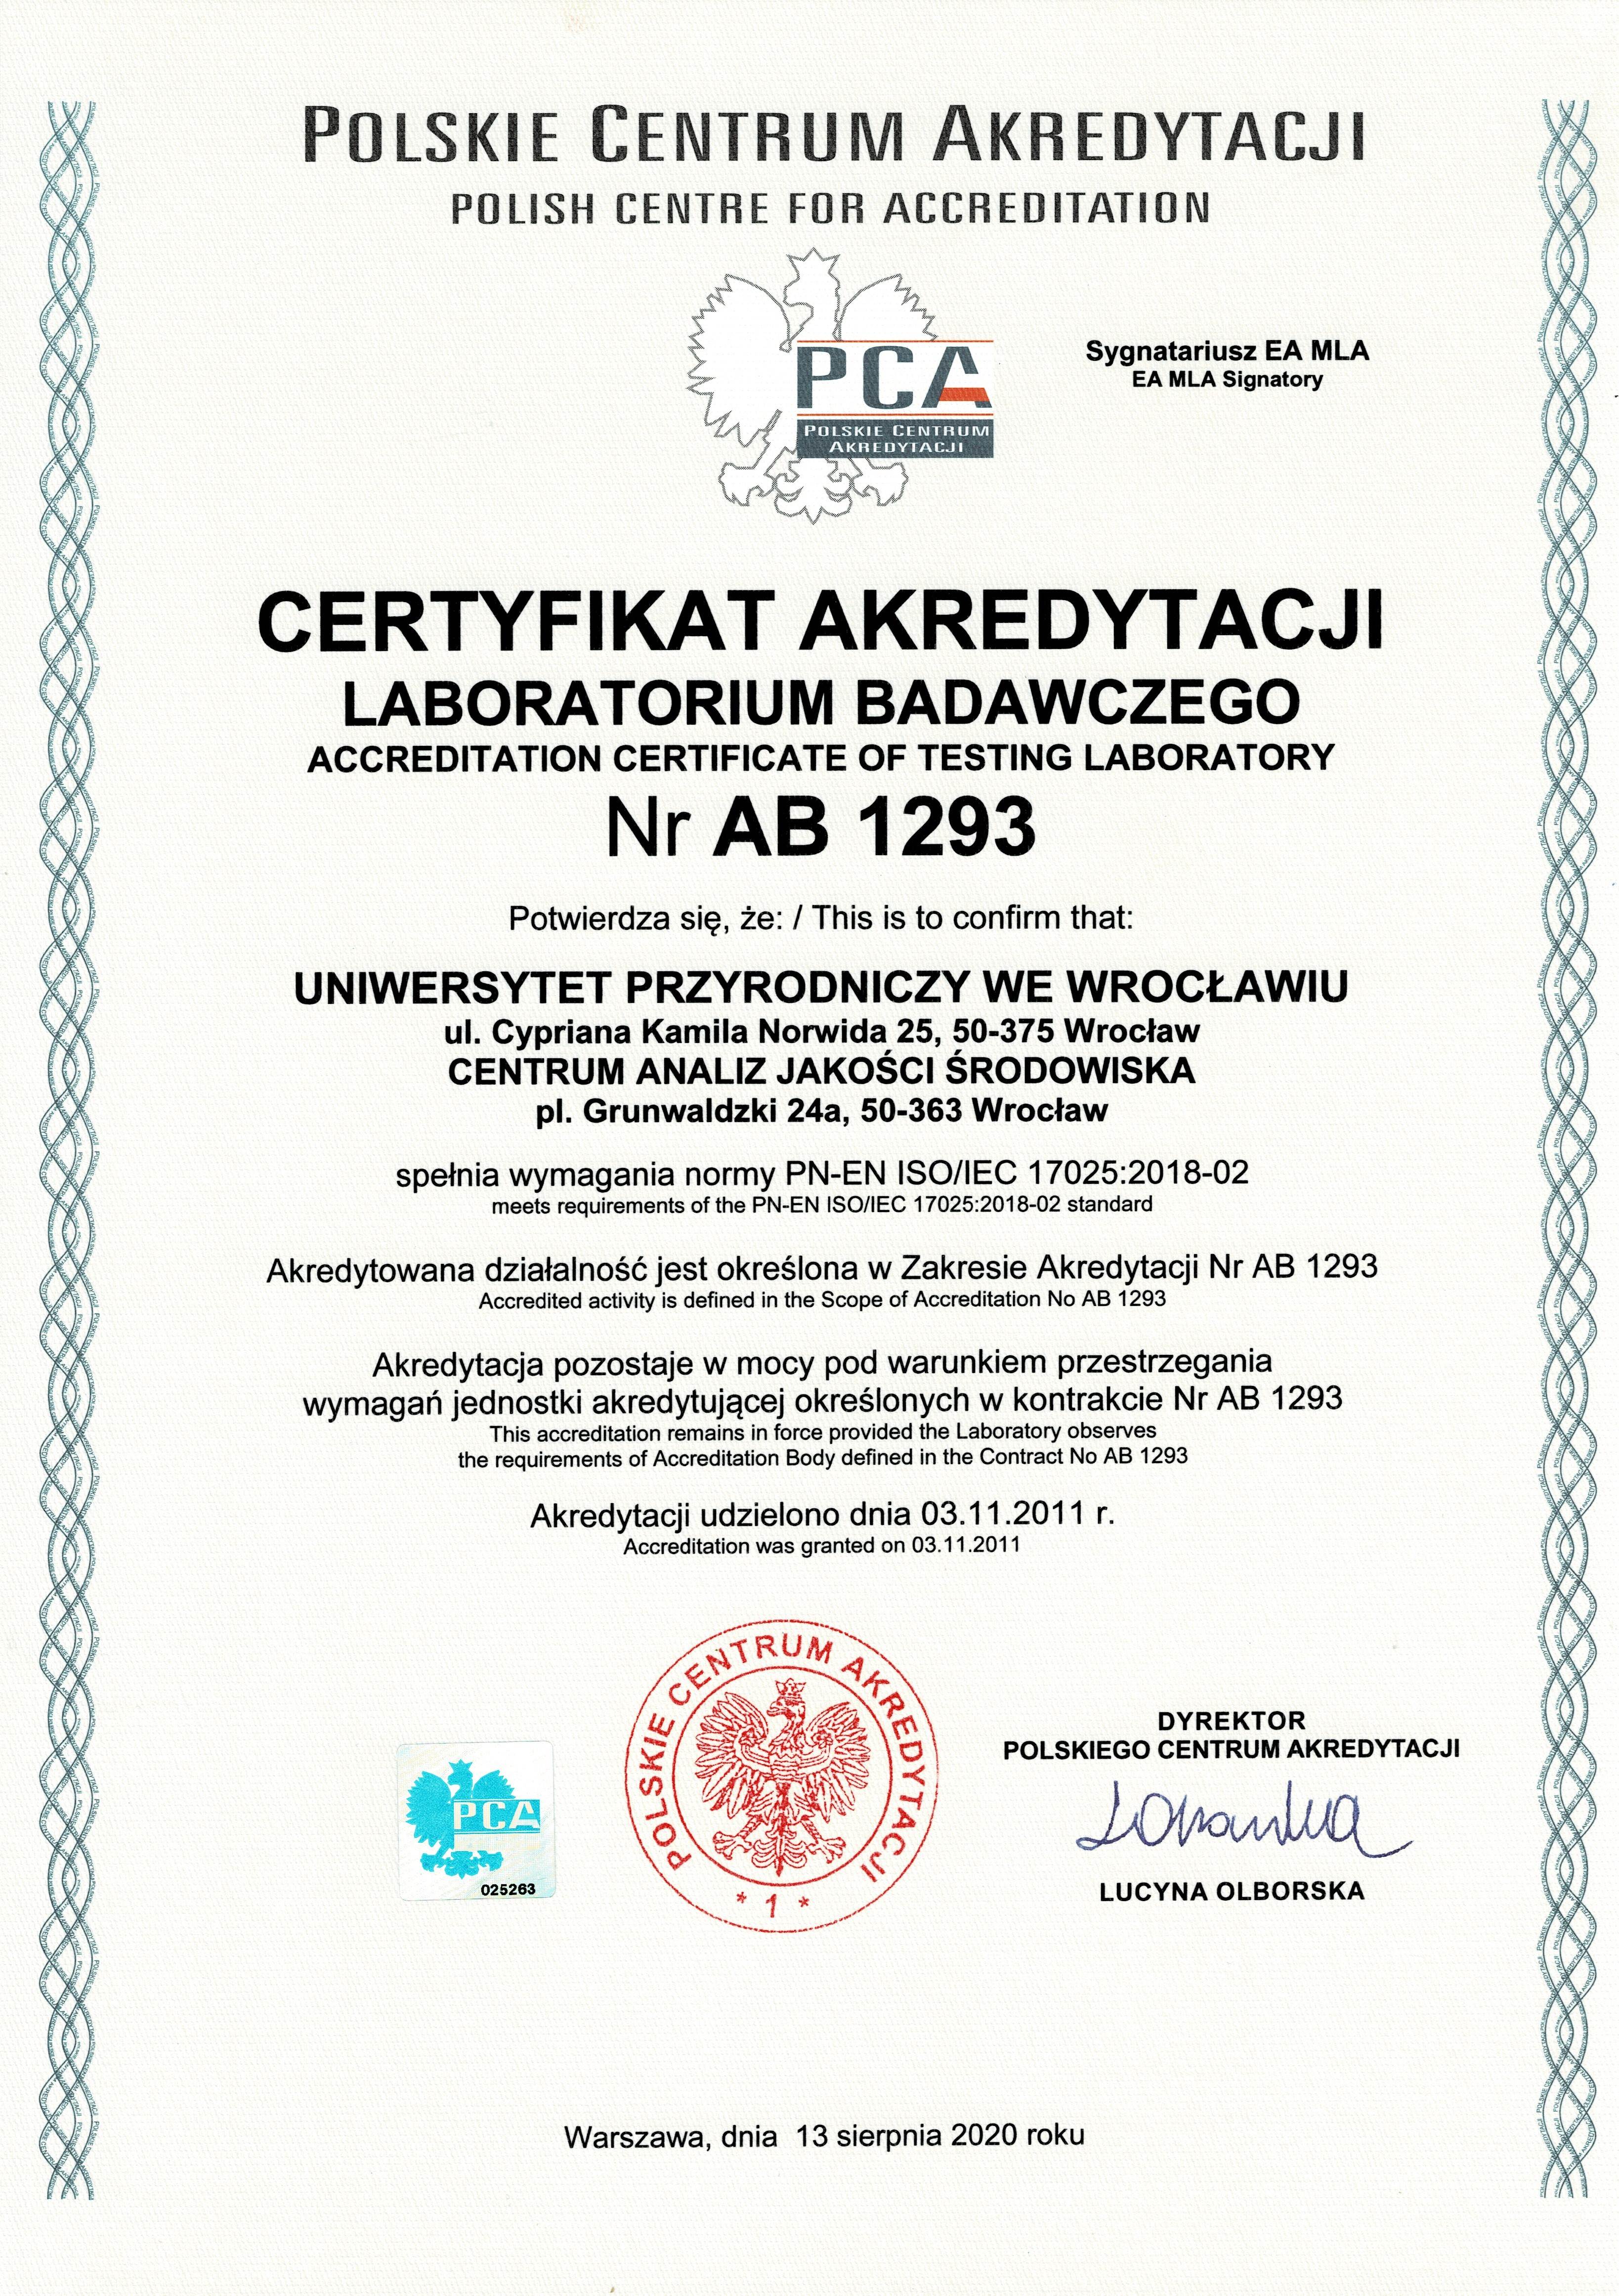 Certyfikat akredytacji laboratoriu badawczego